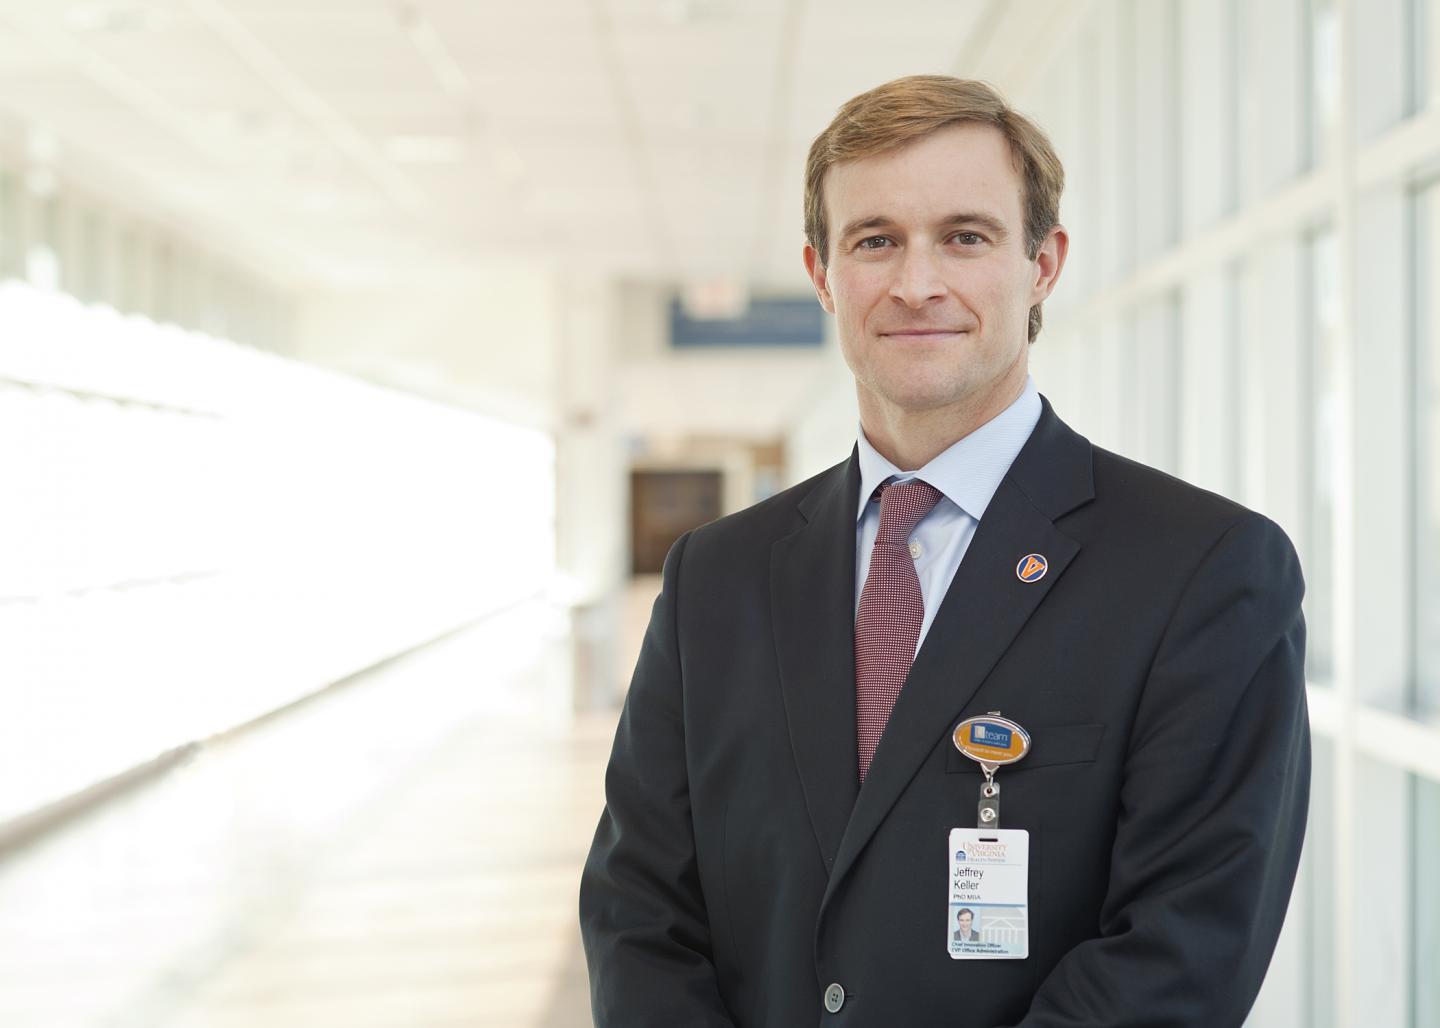 Jeff Keller, UVA Health System